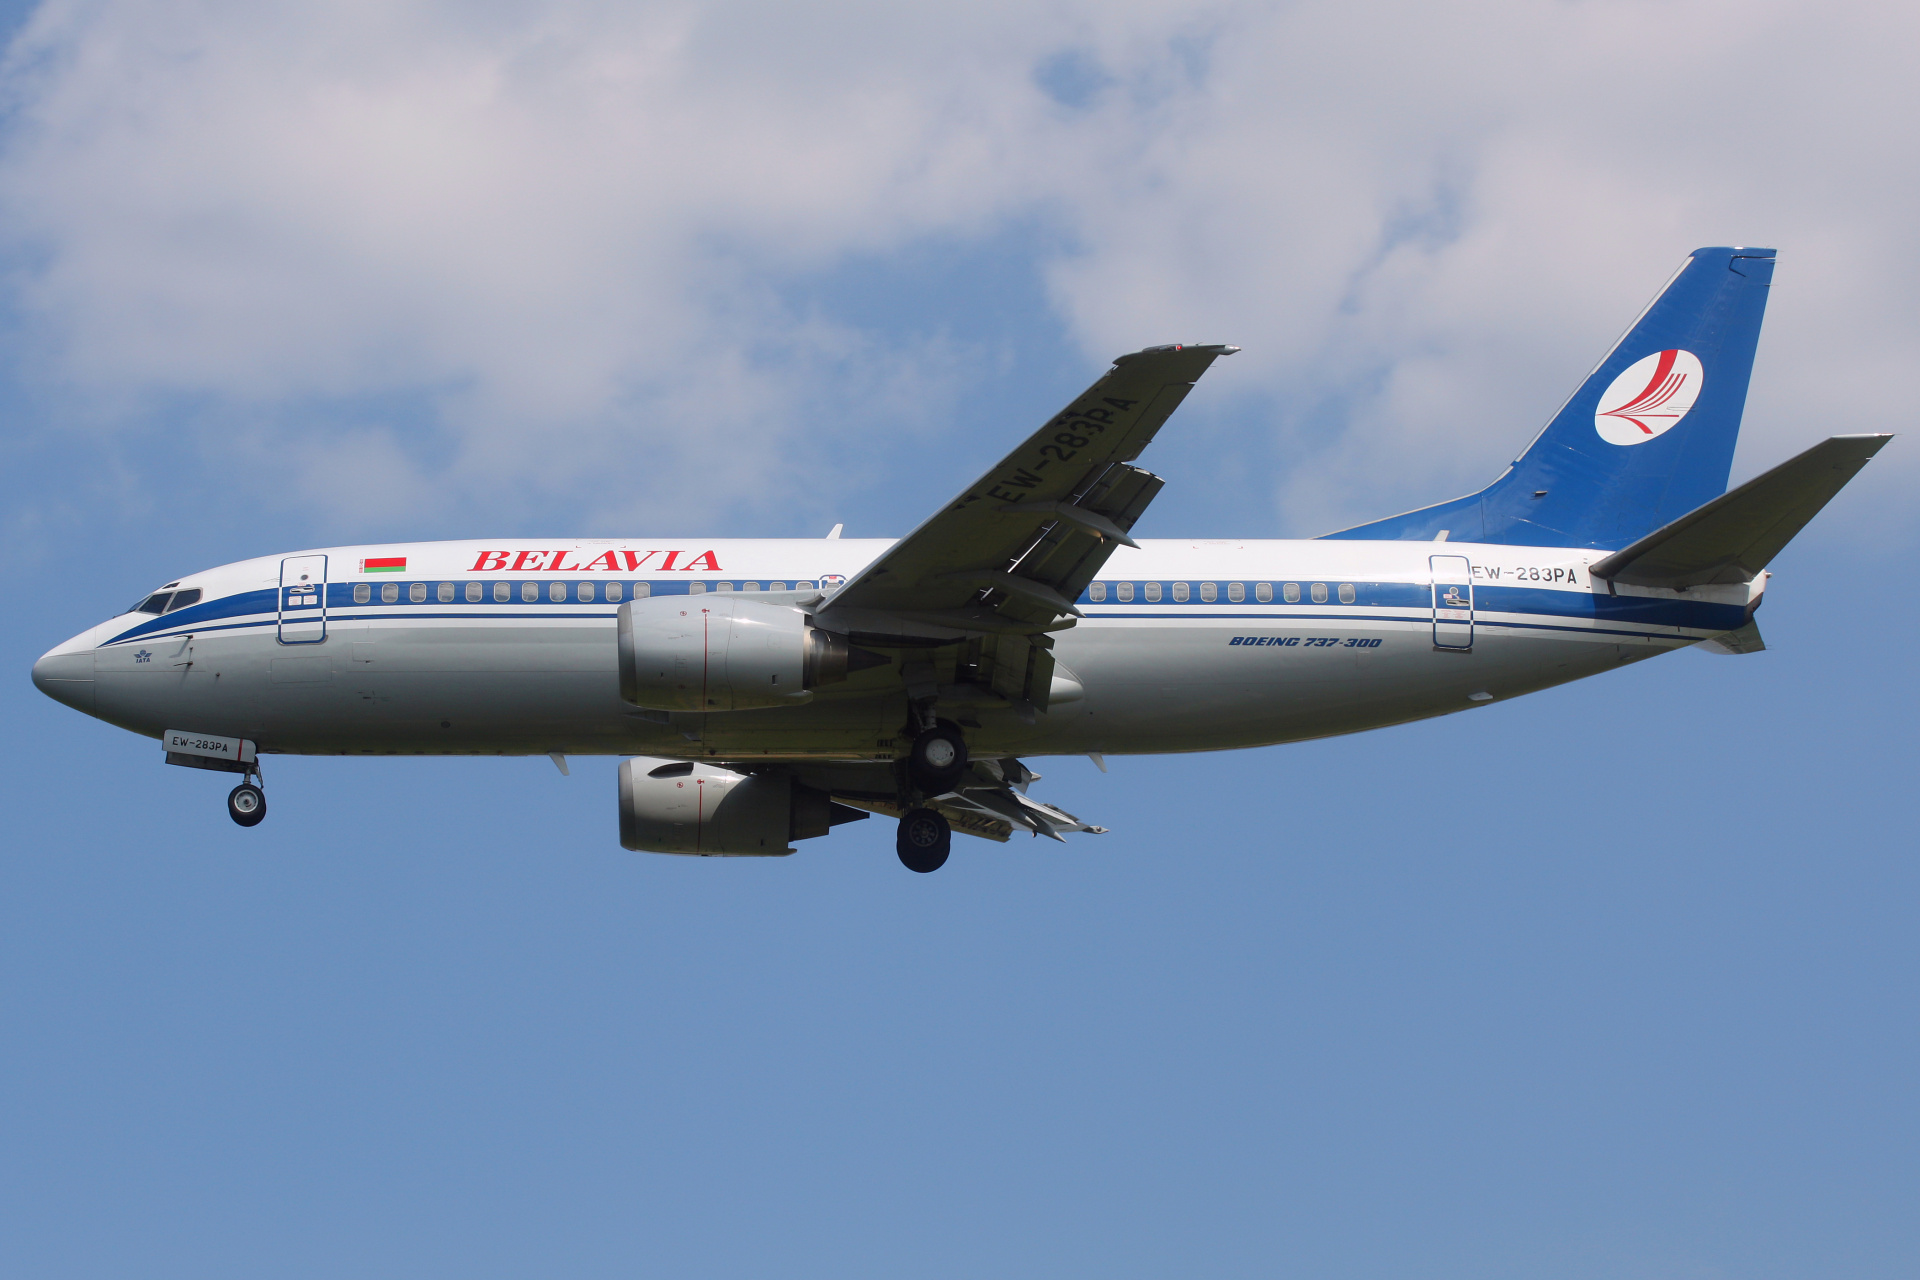 EW-283PA, Belavia (Aircraft » EPWA Spotting » Boeing 737-300)